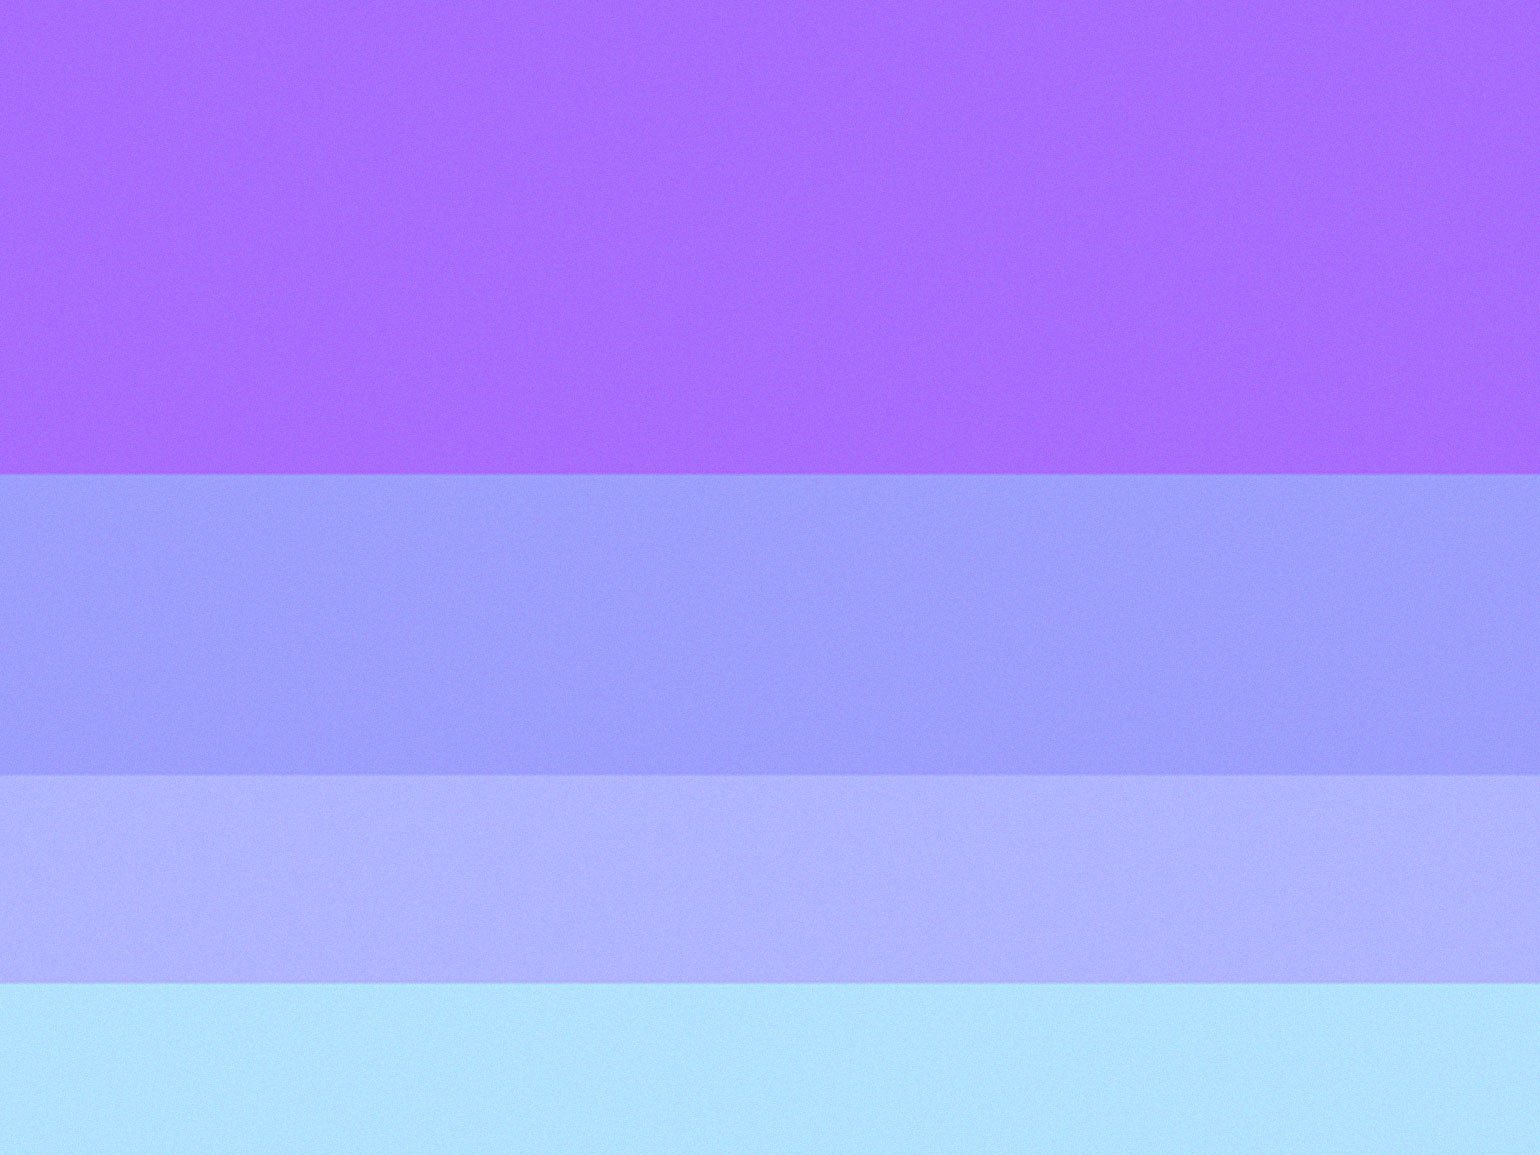 цветовая схема с голубым, сиреневым и фиолетовым цветами